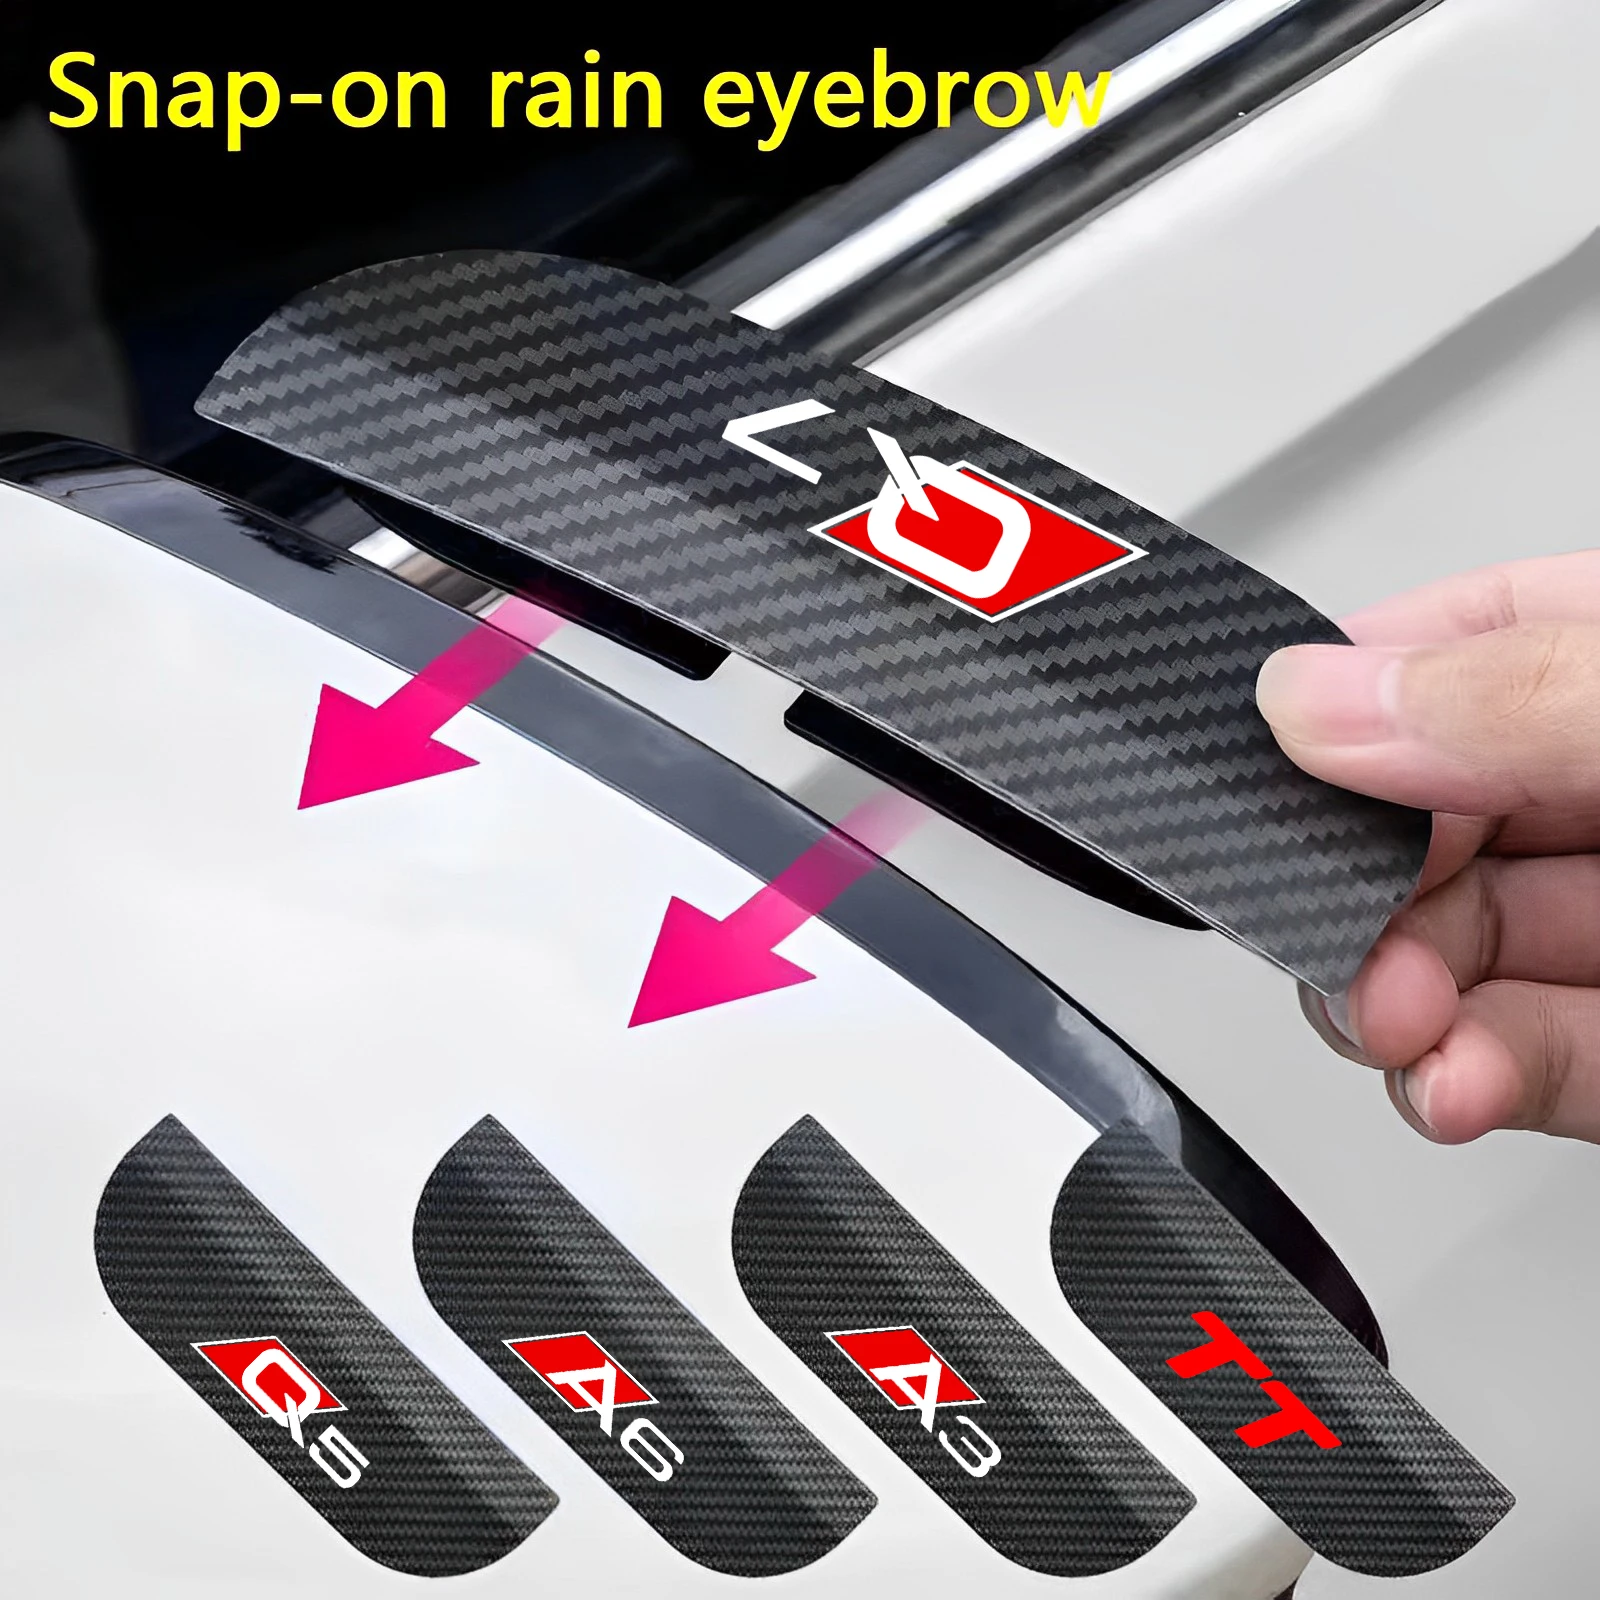 

2Pc Car rearview mirror rainproof brow cover rain dust shield Universal For Audi A3 A4 A5 A6 A7 Q2 Q3 Q5 Q7 Accessories